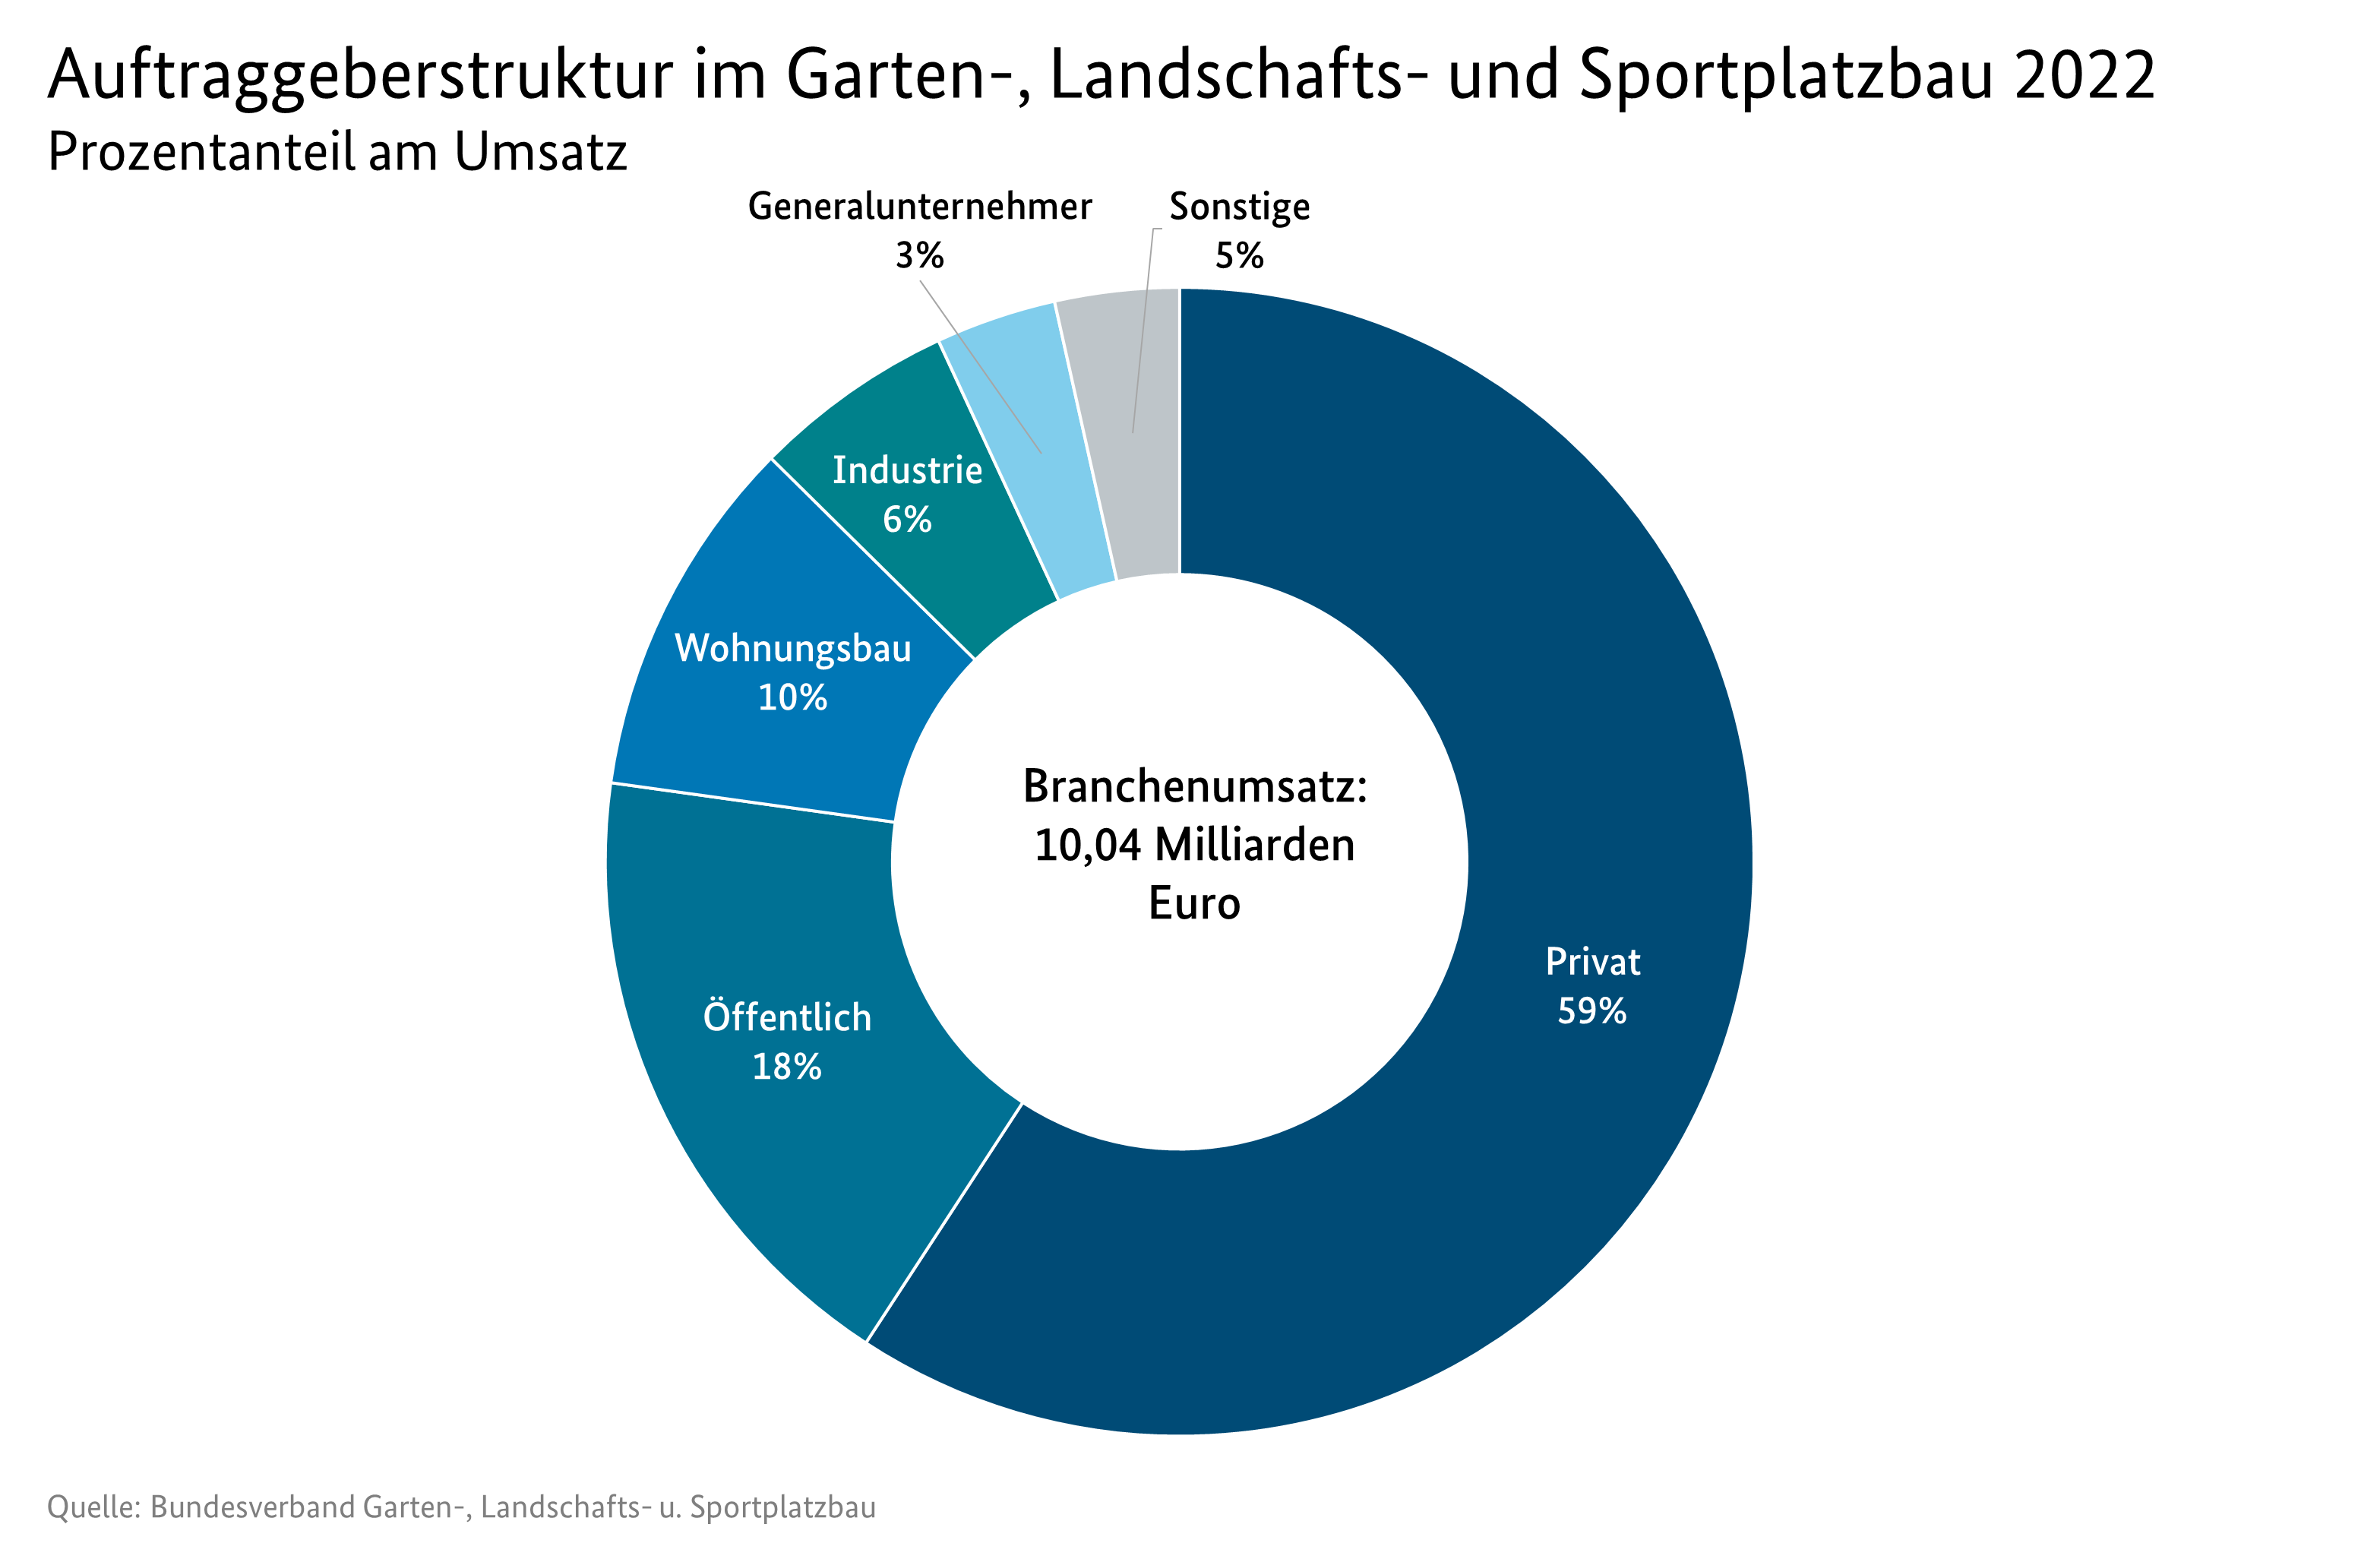 Kreisdiagramm Auftraggeberstruktur im Garten-, Landschafts- und Sportplatzbau 2021 - Prozentanteil am Umsatz. Privat 60%, Öffentlich 17%, Wohnungsbau 11%, Industrie 6%, Generalunternehmer 3% und Sonstige 3%.